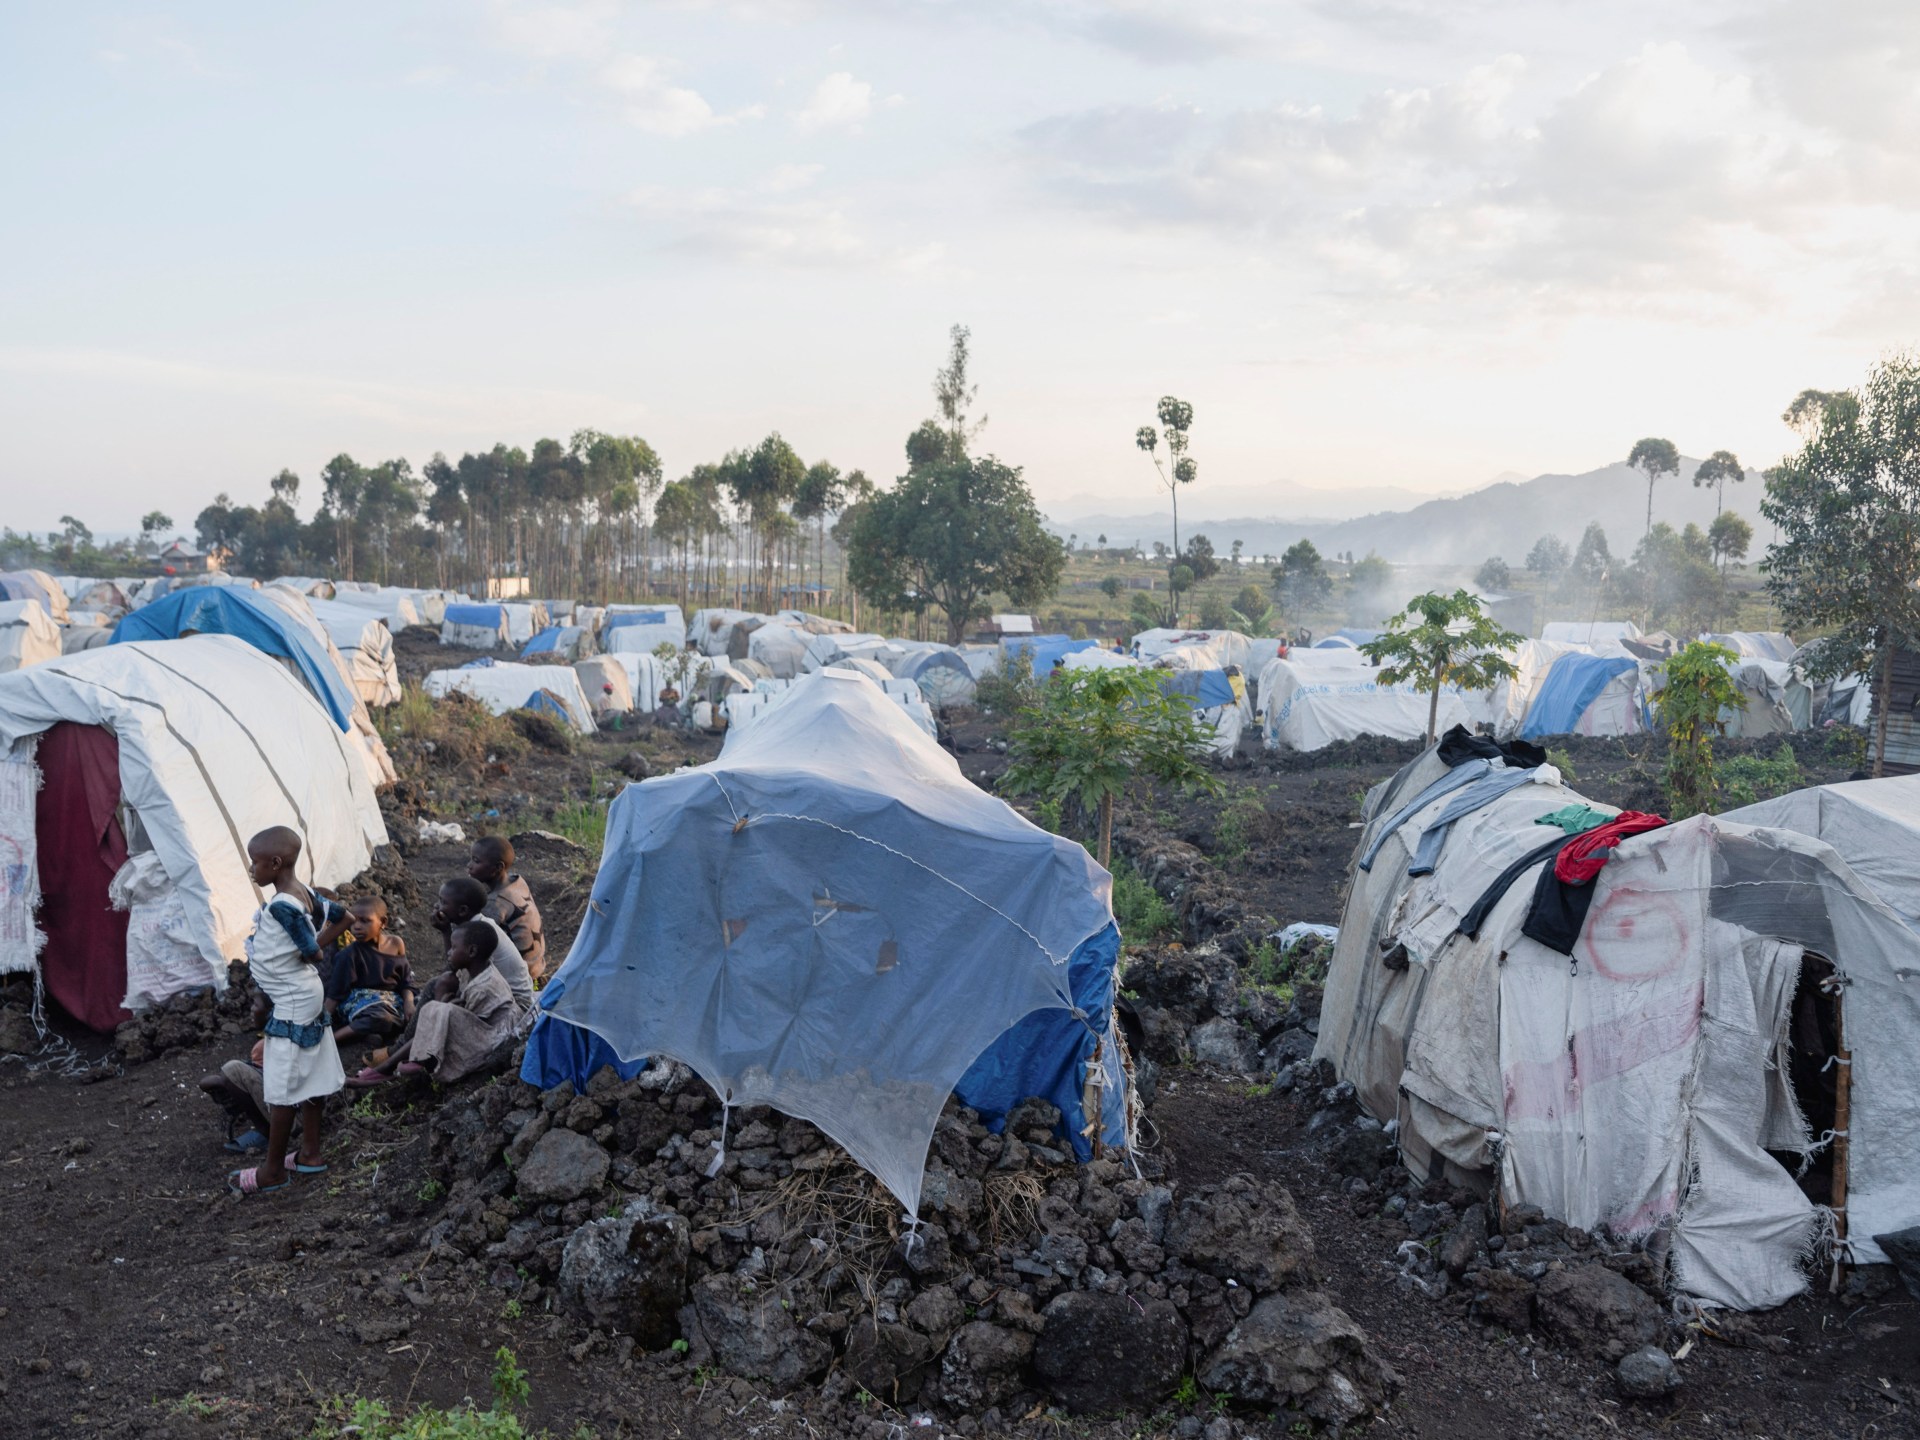 تفاقم الأزمة الإنسانية شرقي الكونغو الديمقراطية مع نزوح الملايين | سياسة – البوكس نيوز